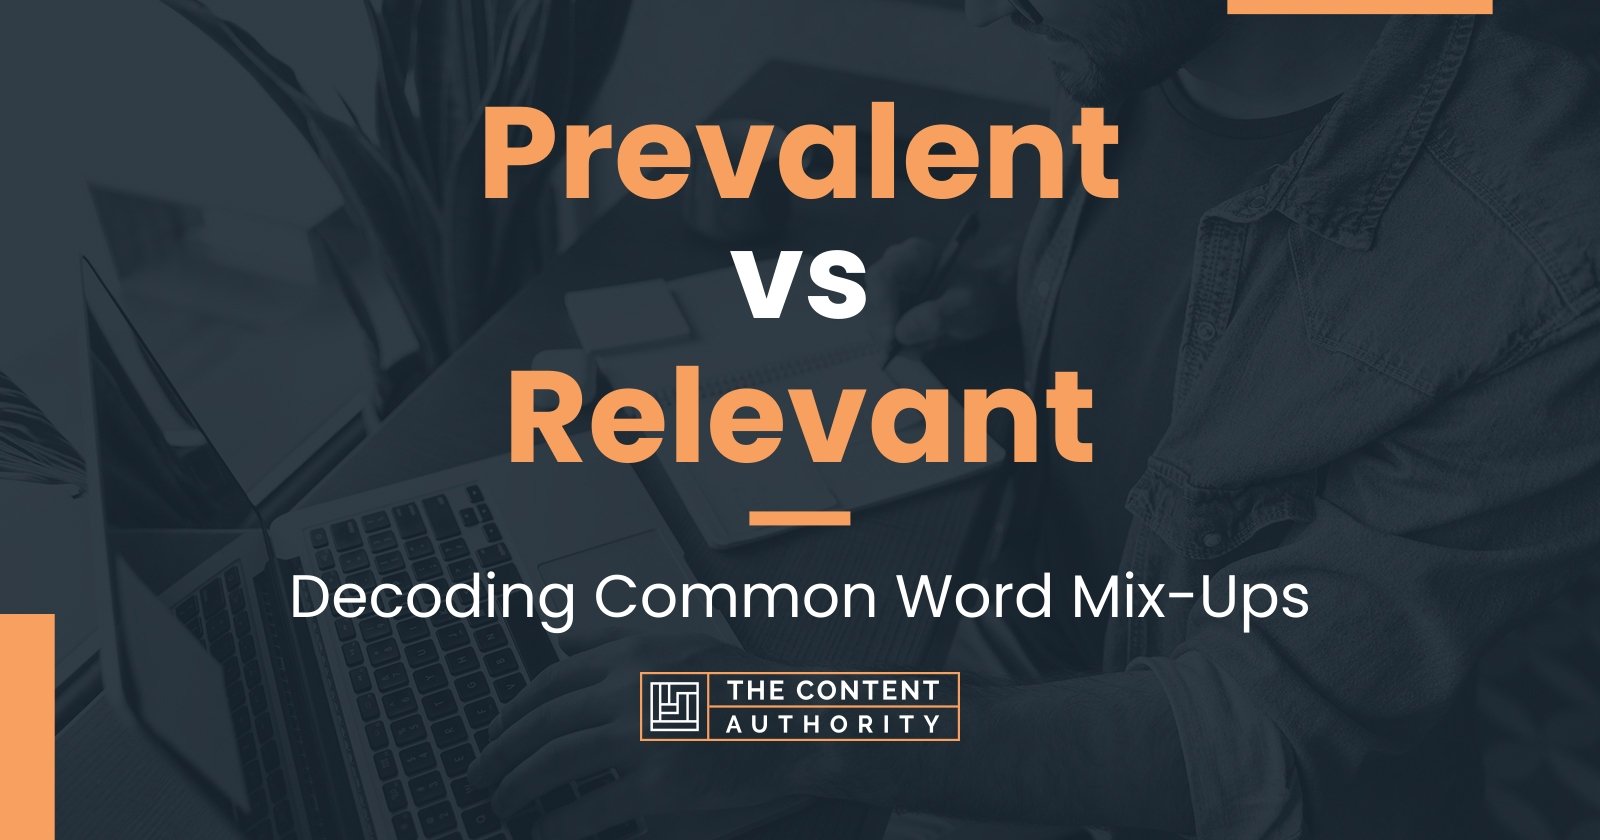 Prevalent vs Relevant: Decoding Common Word Mix-Ups